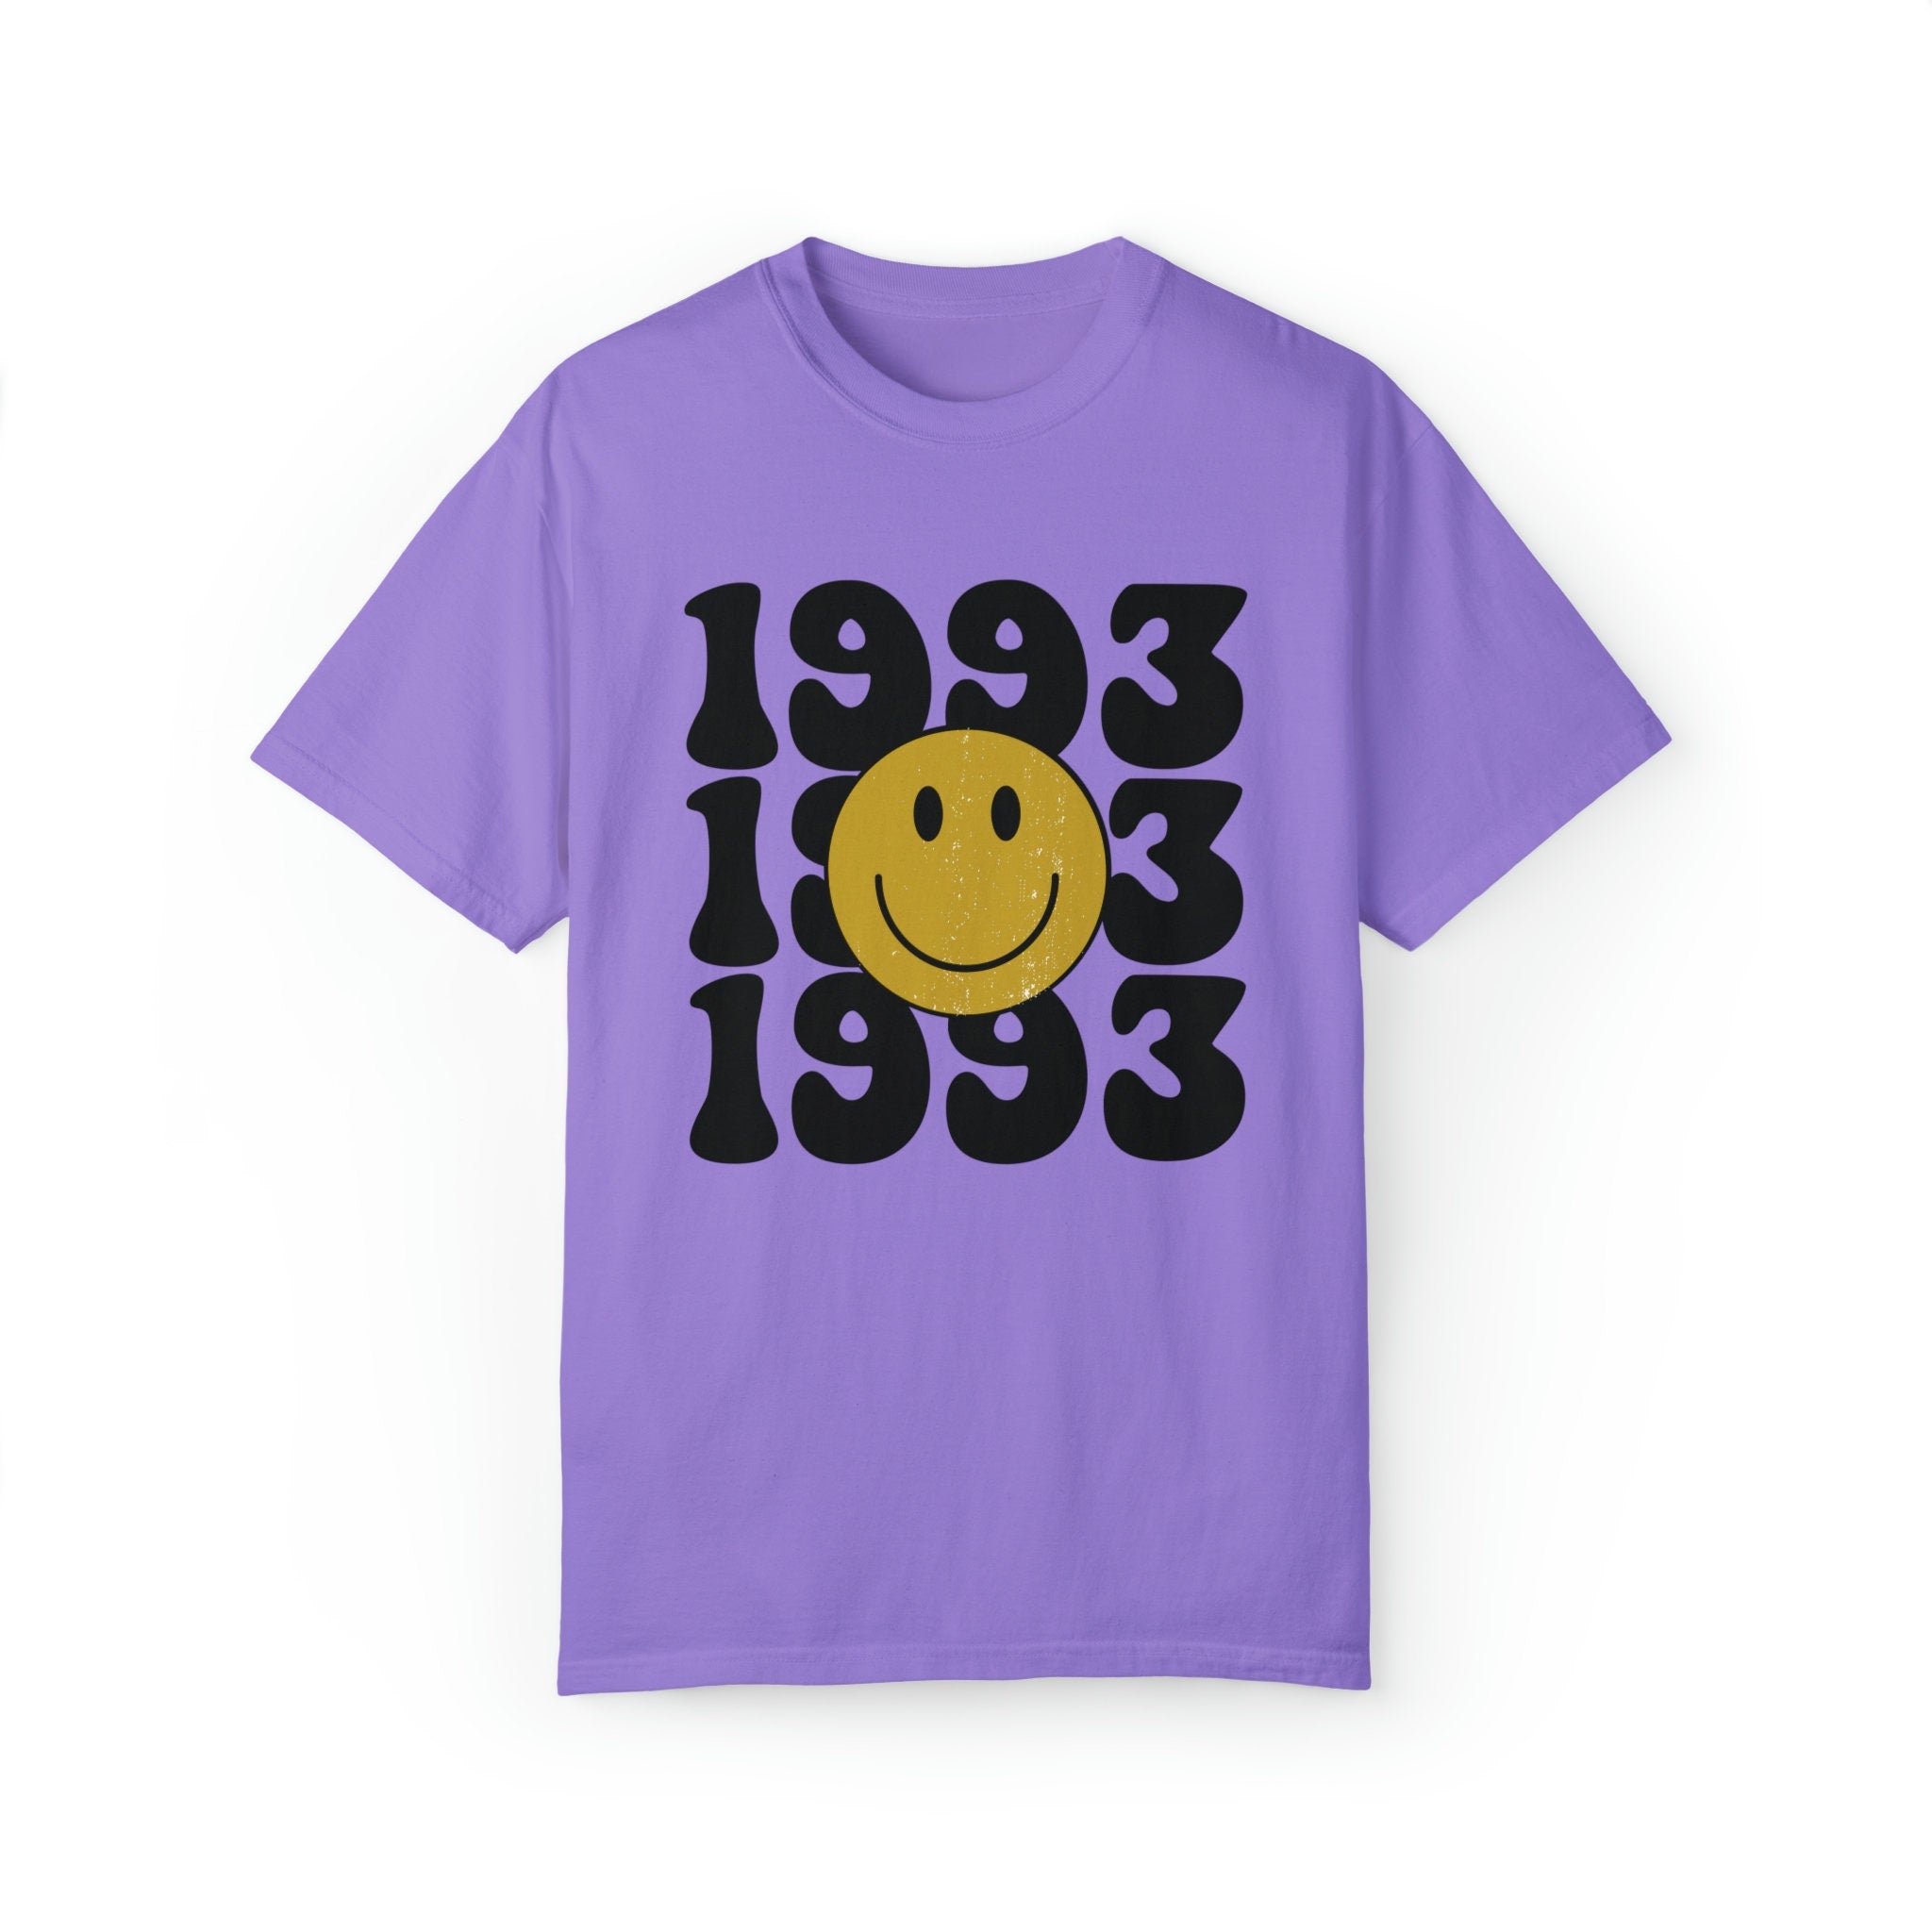 1993 Retro Shirt, Custom 30th Birthday Tshirt, Retro Vintage 30th Birthday 1993 Unisex TShirt 30th Birthday Gift For Her/Him/Them Dirty 30